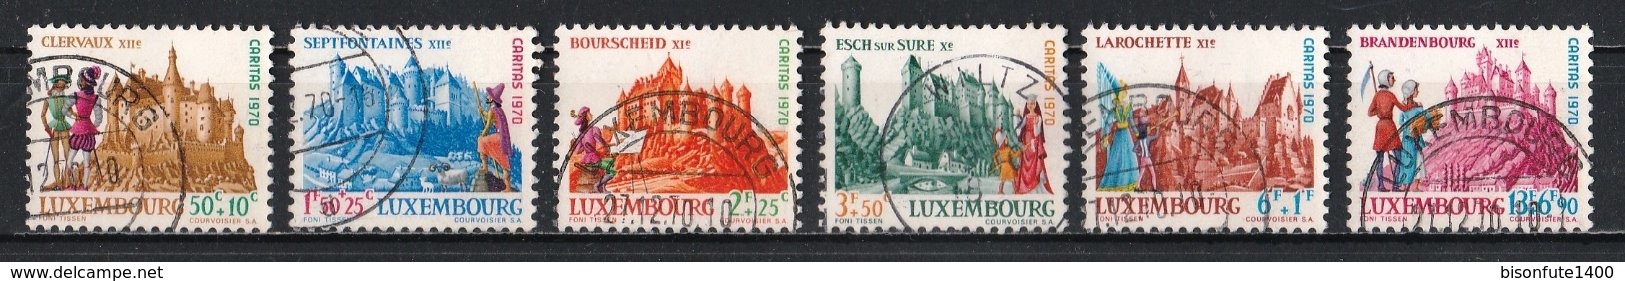 Luxembourg 1970 : Timbres Yvert & Tellier N° 764 - 765 - 766 - 767 - 768 Et 769 Oblit. - Gebruikt